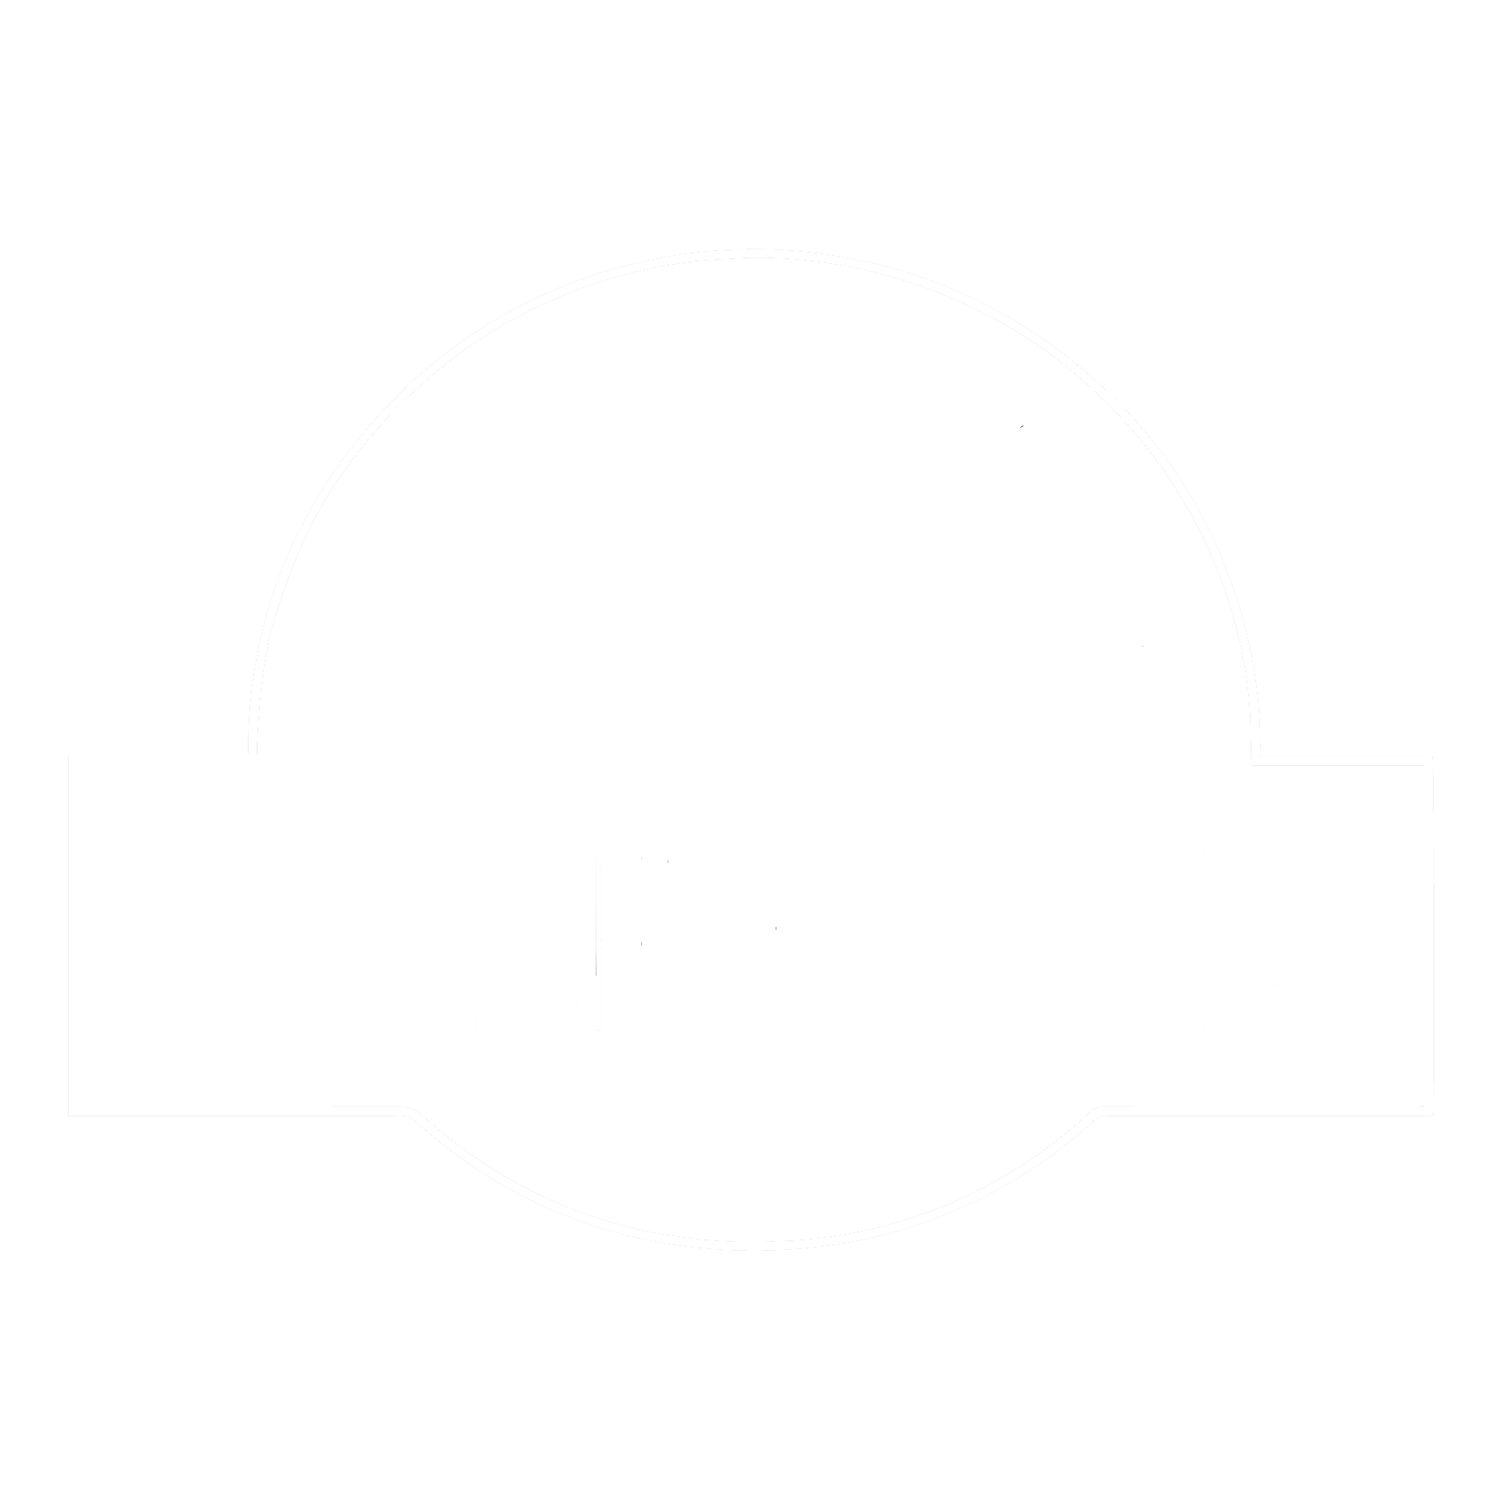 Kieft Lab